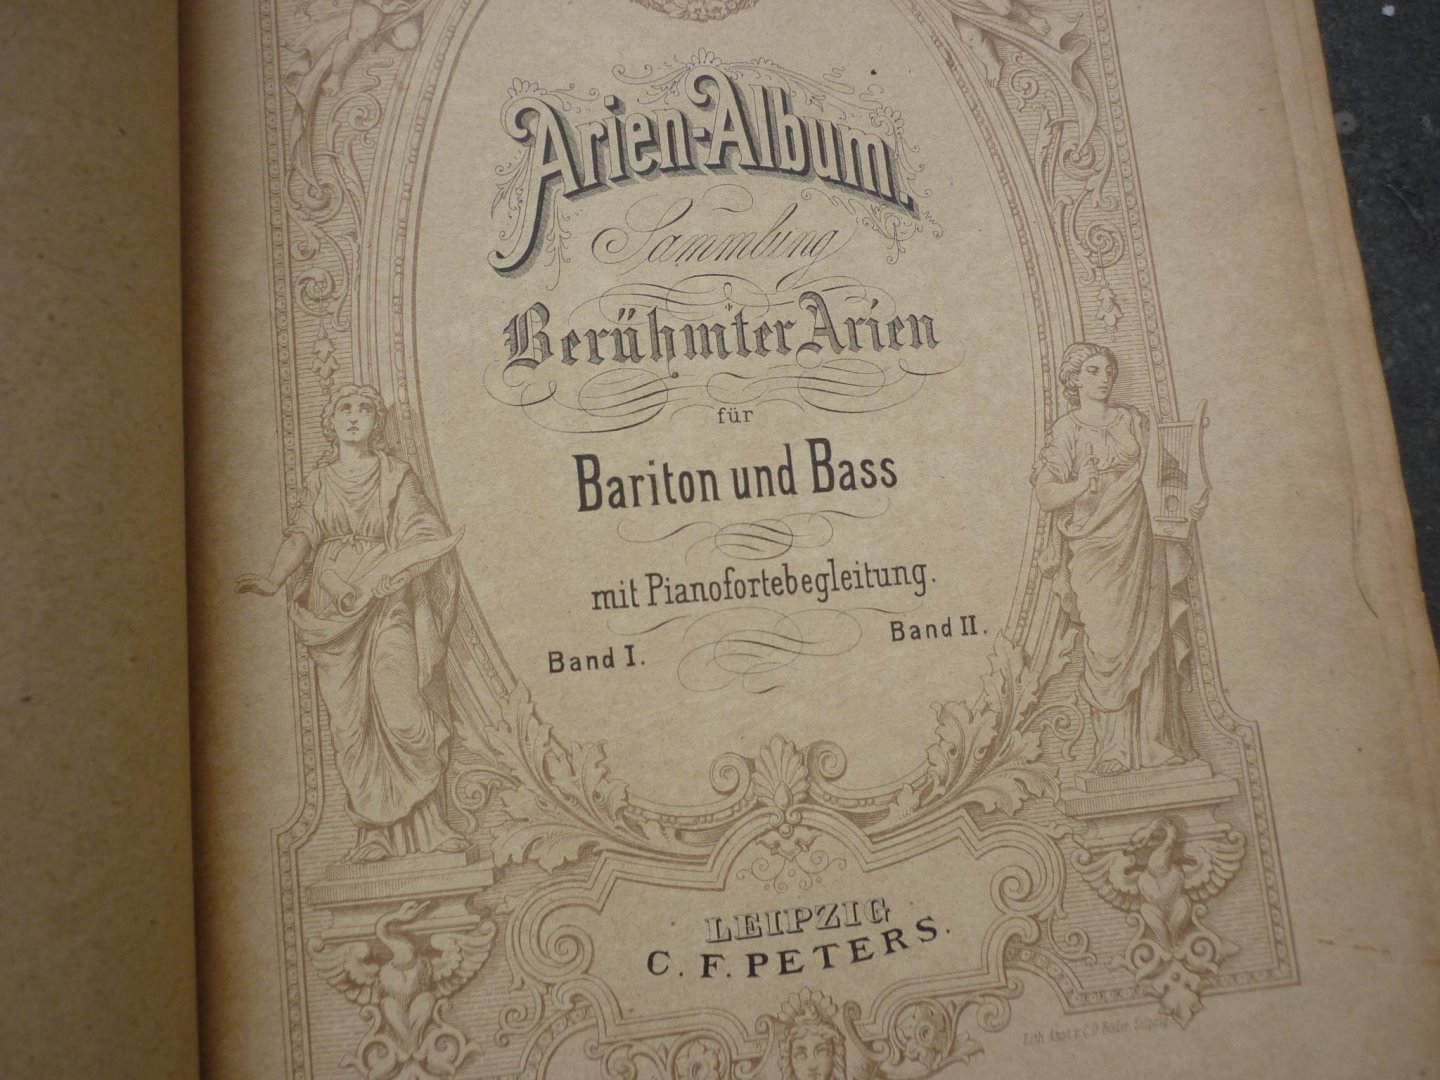 Div. Componisten - Arien-Album; Sammlung Berühmte Arien für Bariton und Bass mit Pianofortebegleitung; voor Zangstem (BarB), piano